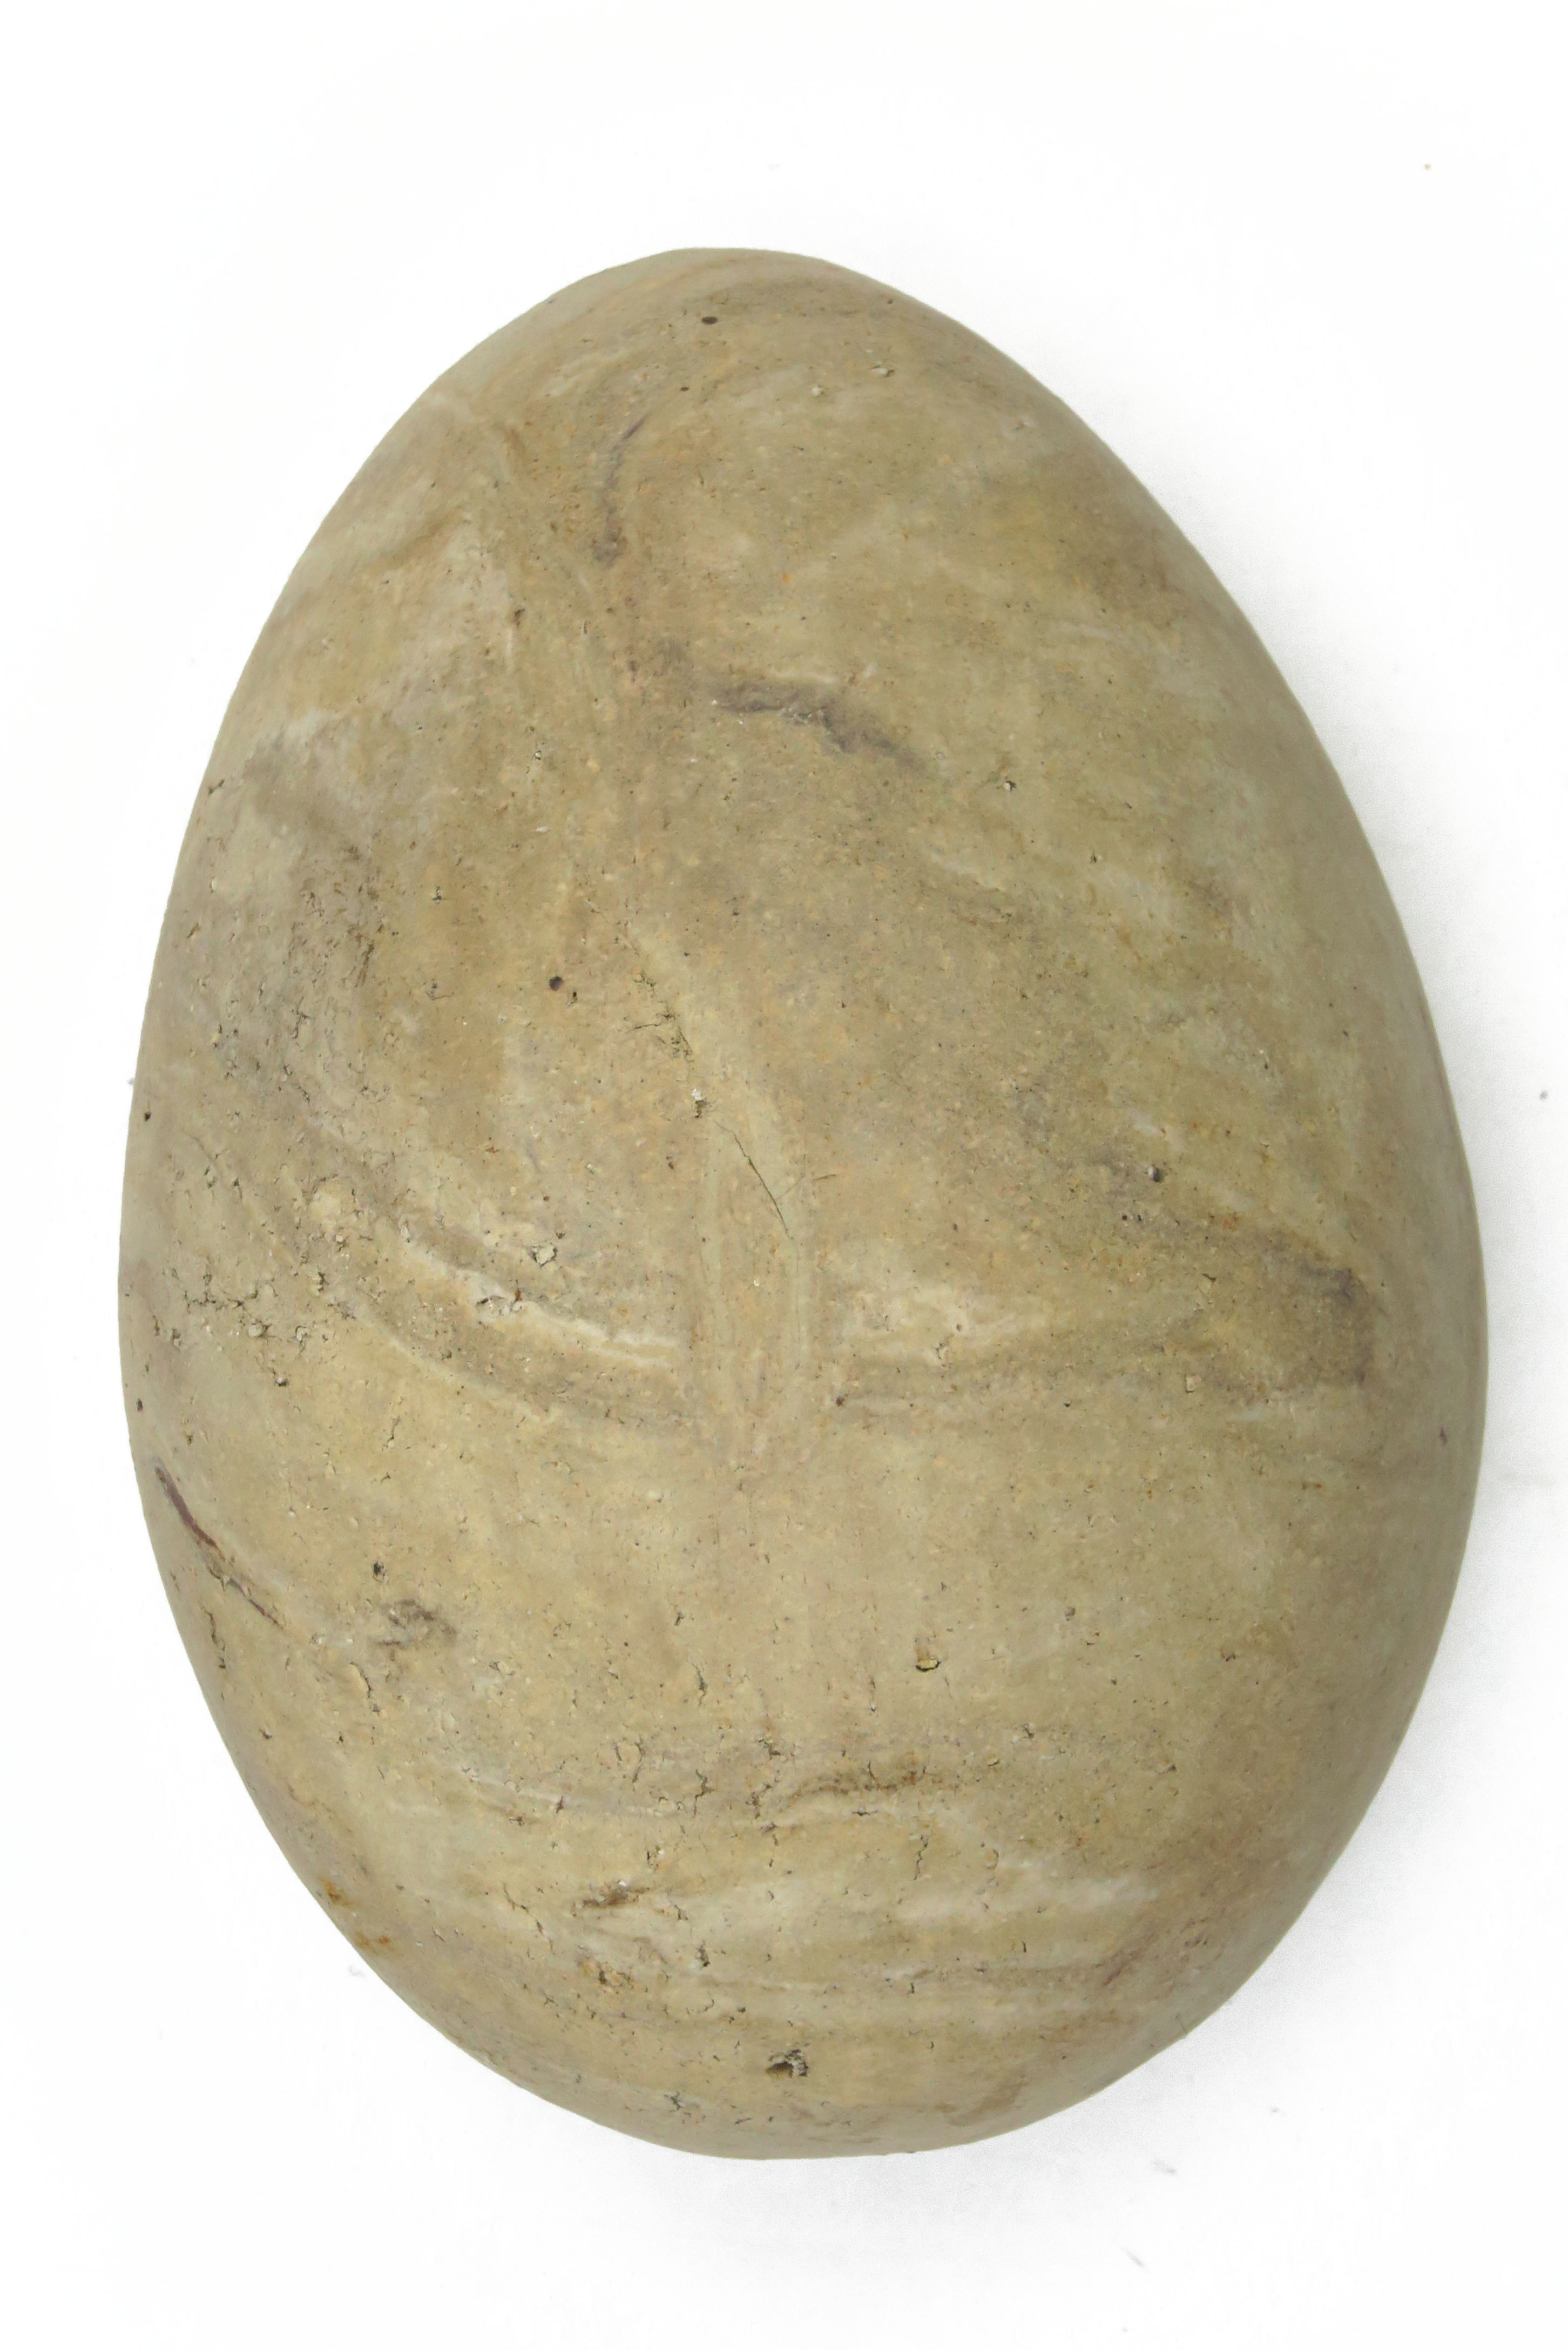  Eier aus Naturton marmoriert/ M 14 cm